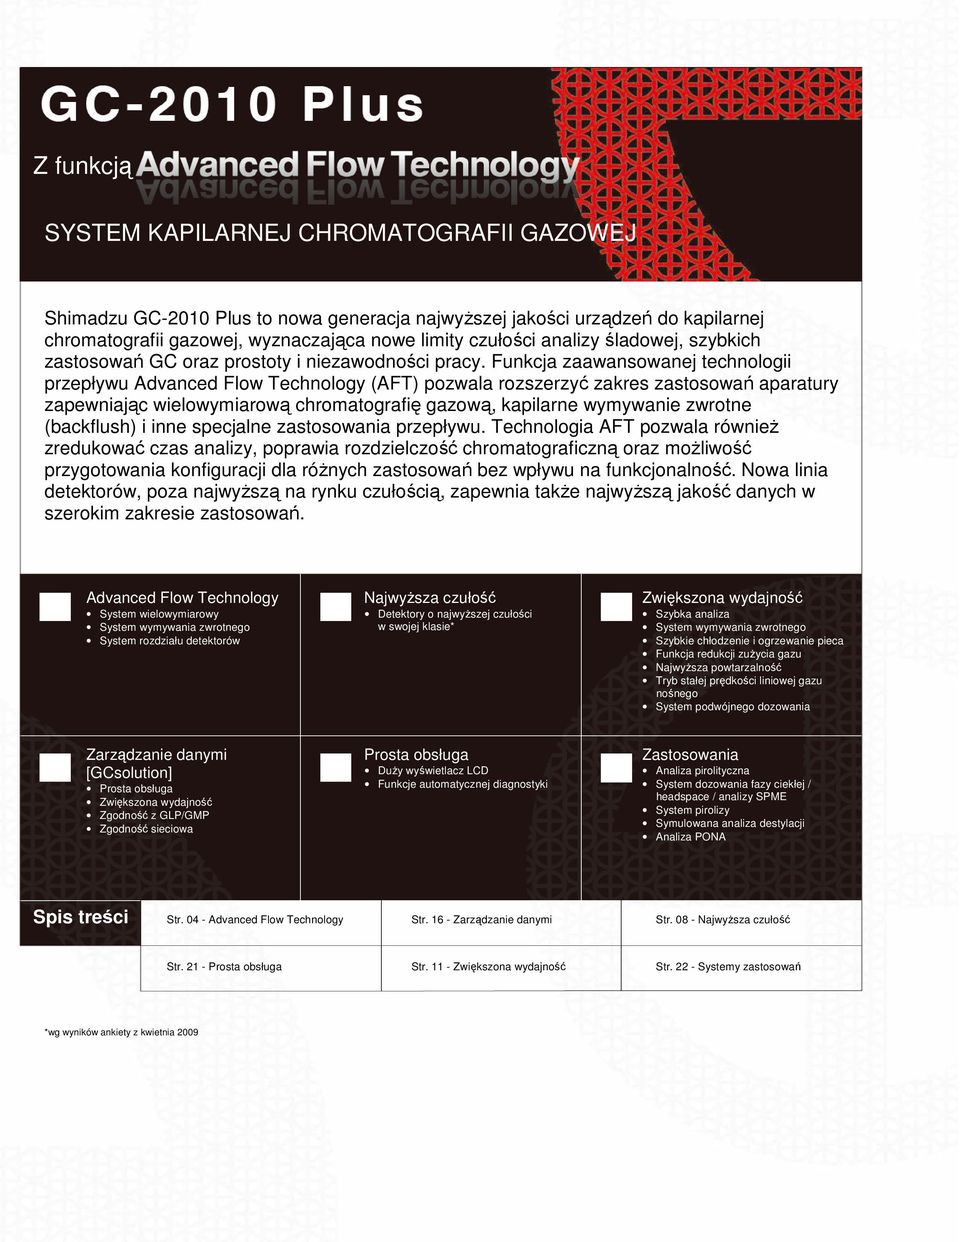 Funkcja zaawansowanej technologii przepływu Advanced Flow Technology (AFT) pozwala rozszerzyć zakres zastosowań aparatury zapewniając wielowymiarową chromatografię gazową, kapilarne wymywanie zwrotne